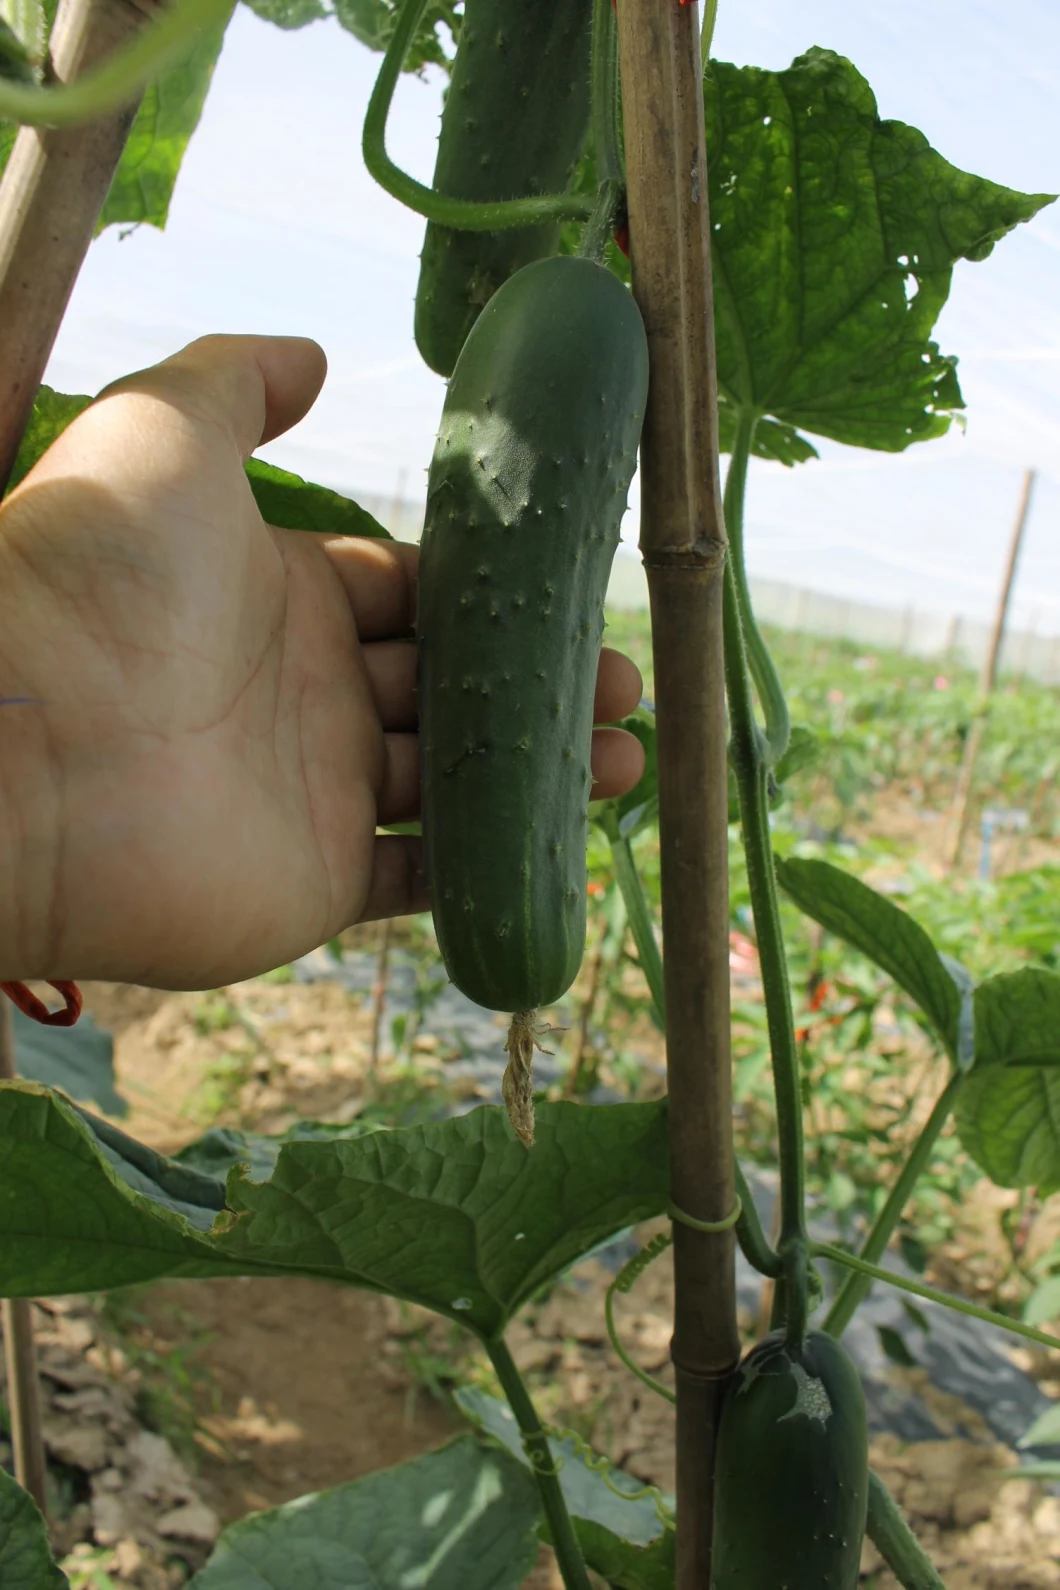 HD Less Spots Green Cucumber Seeds